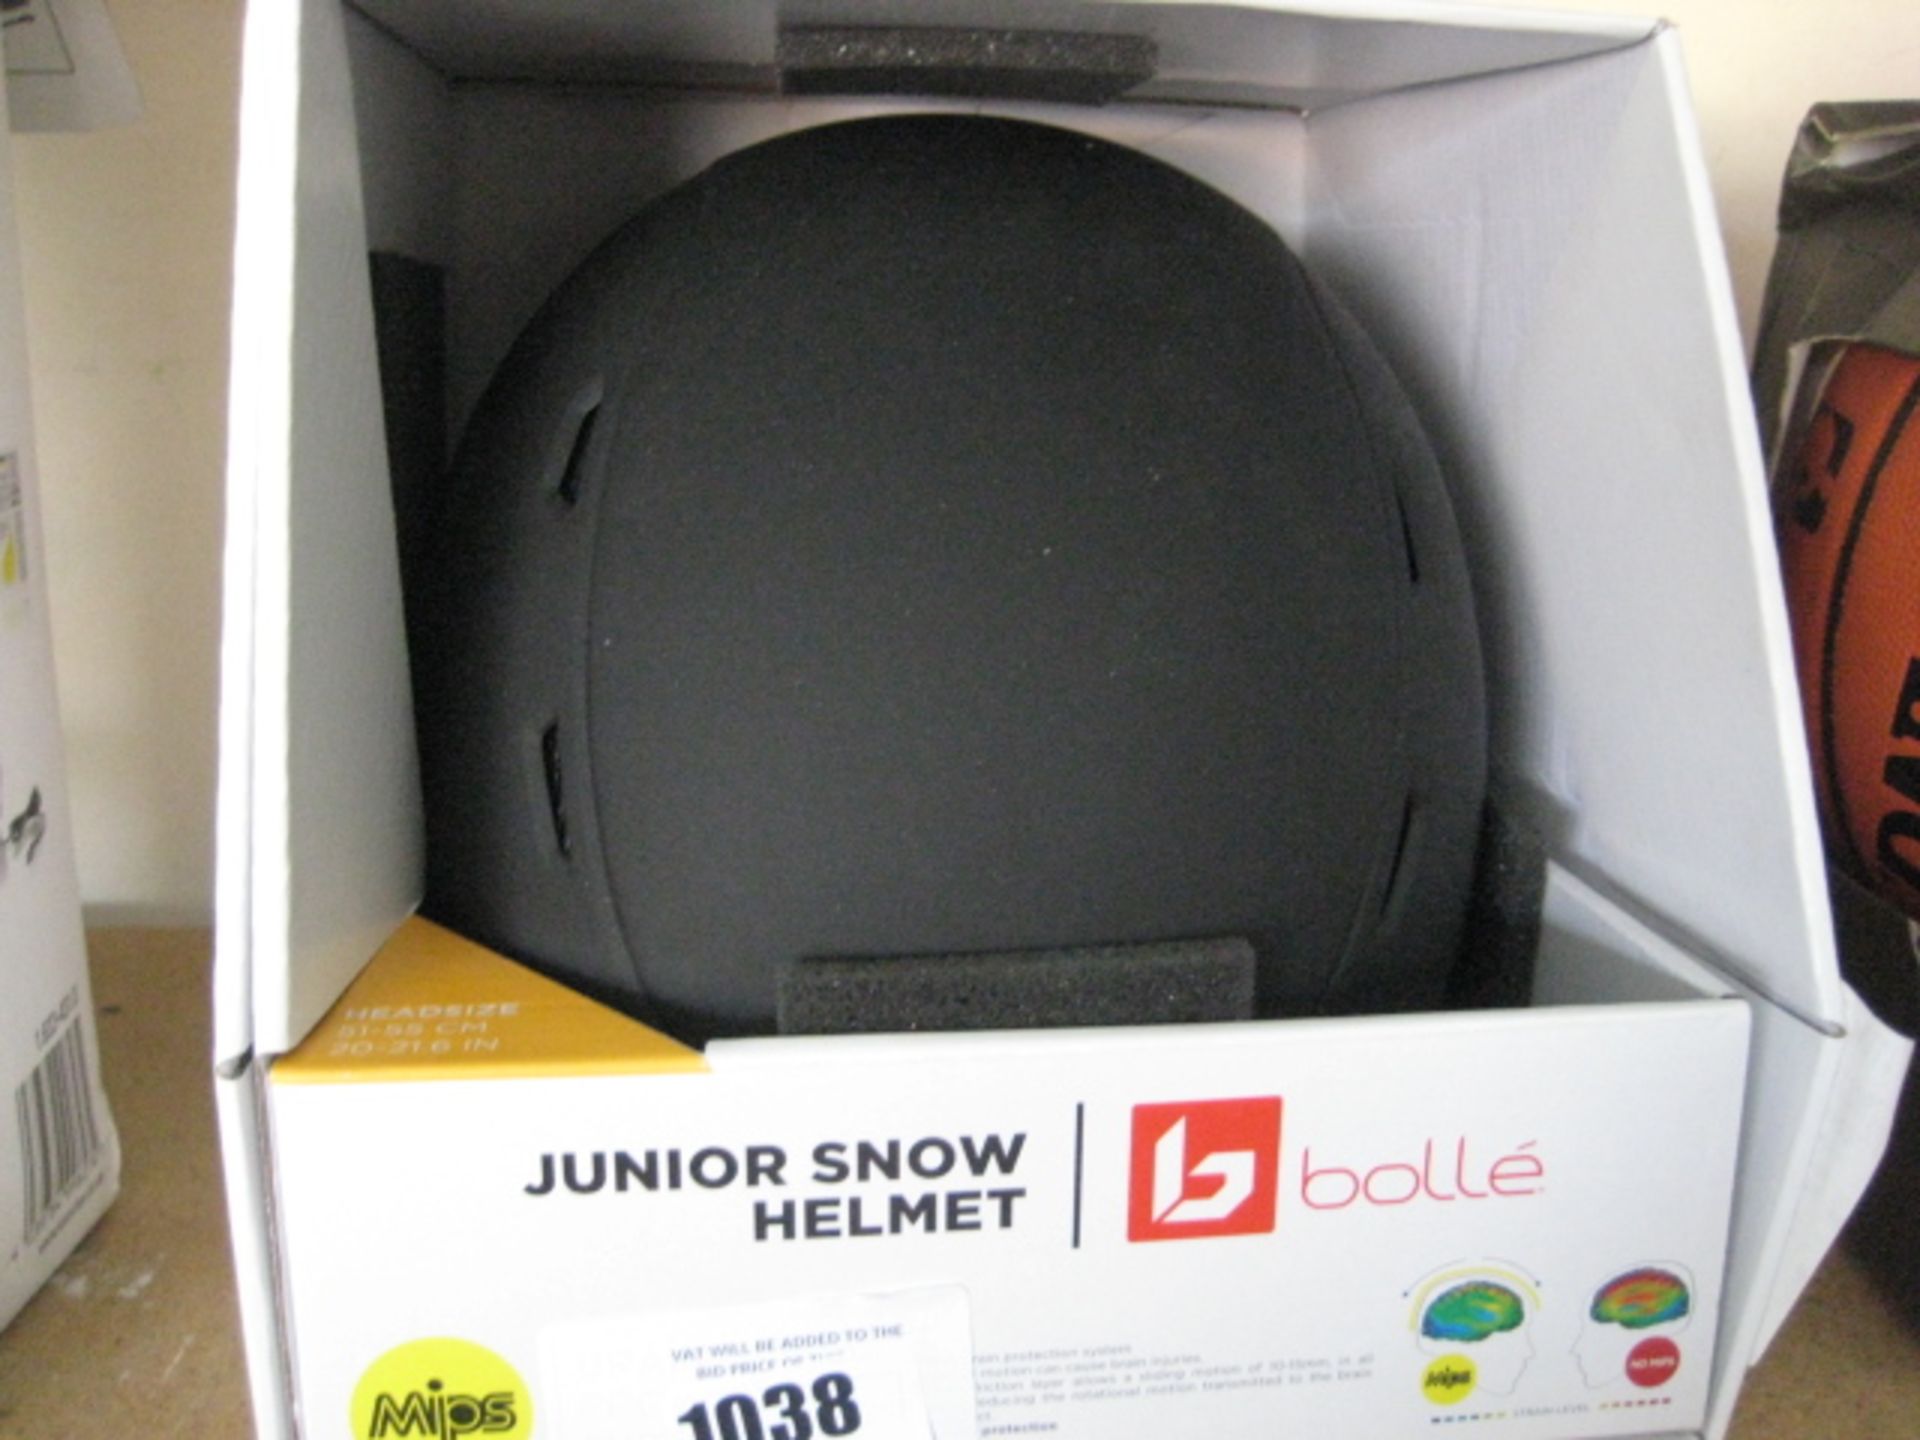 Bolle junior snow helmet in black